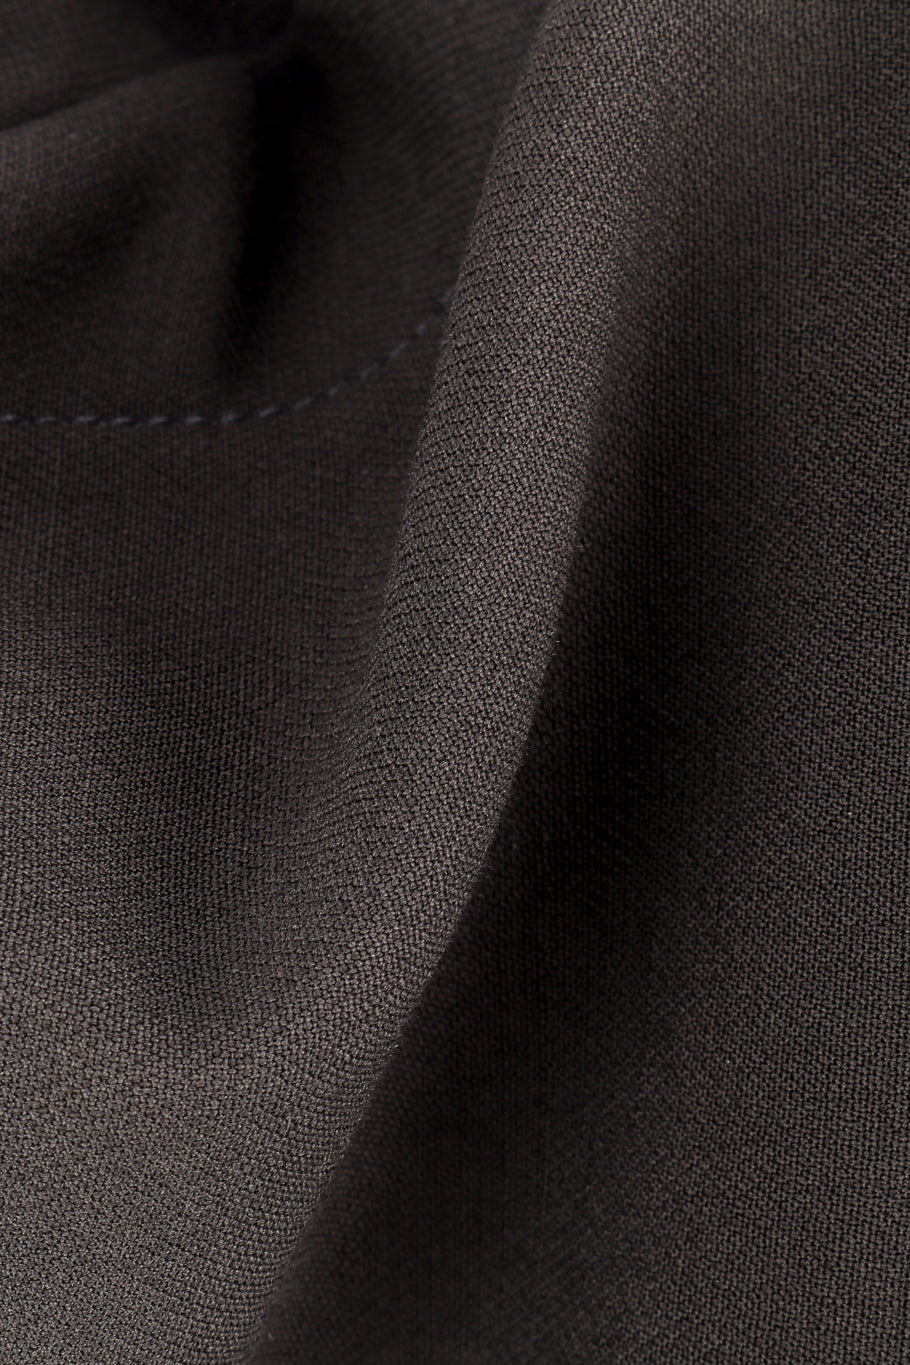 Vintage Hermés Wool Trench Coat fabric closeup @recess la